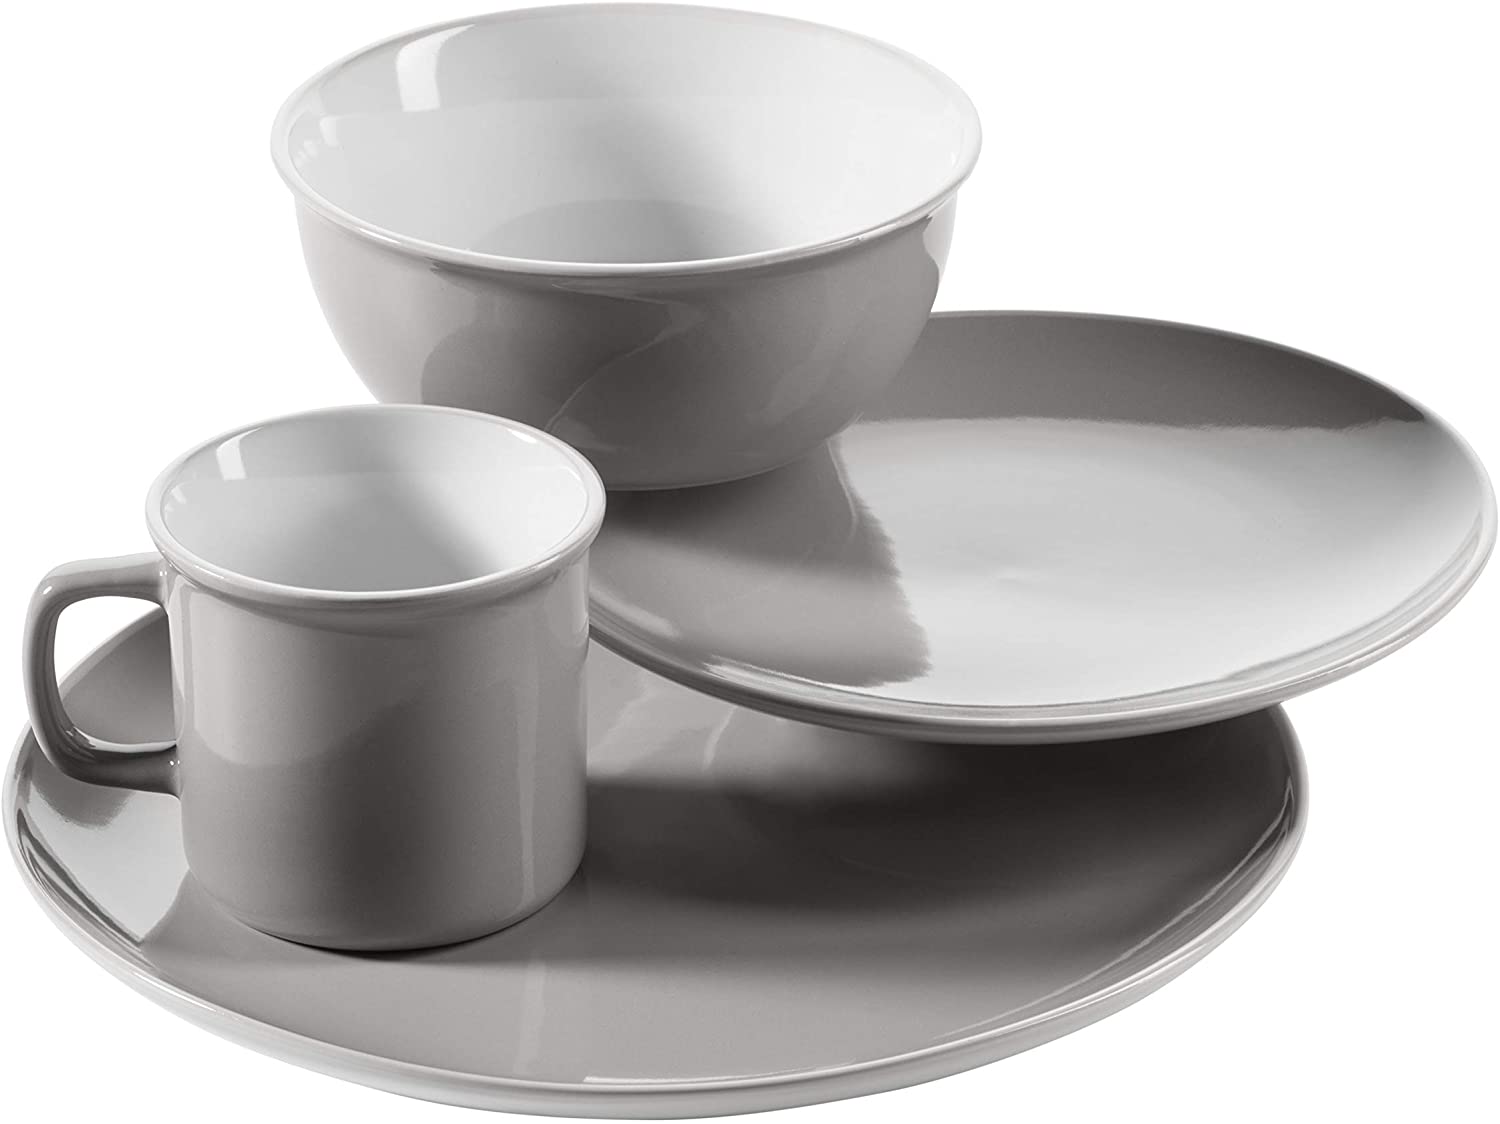 Mäser Maila Vintage Ceramic Tableware Set